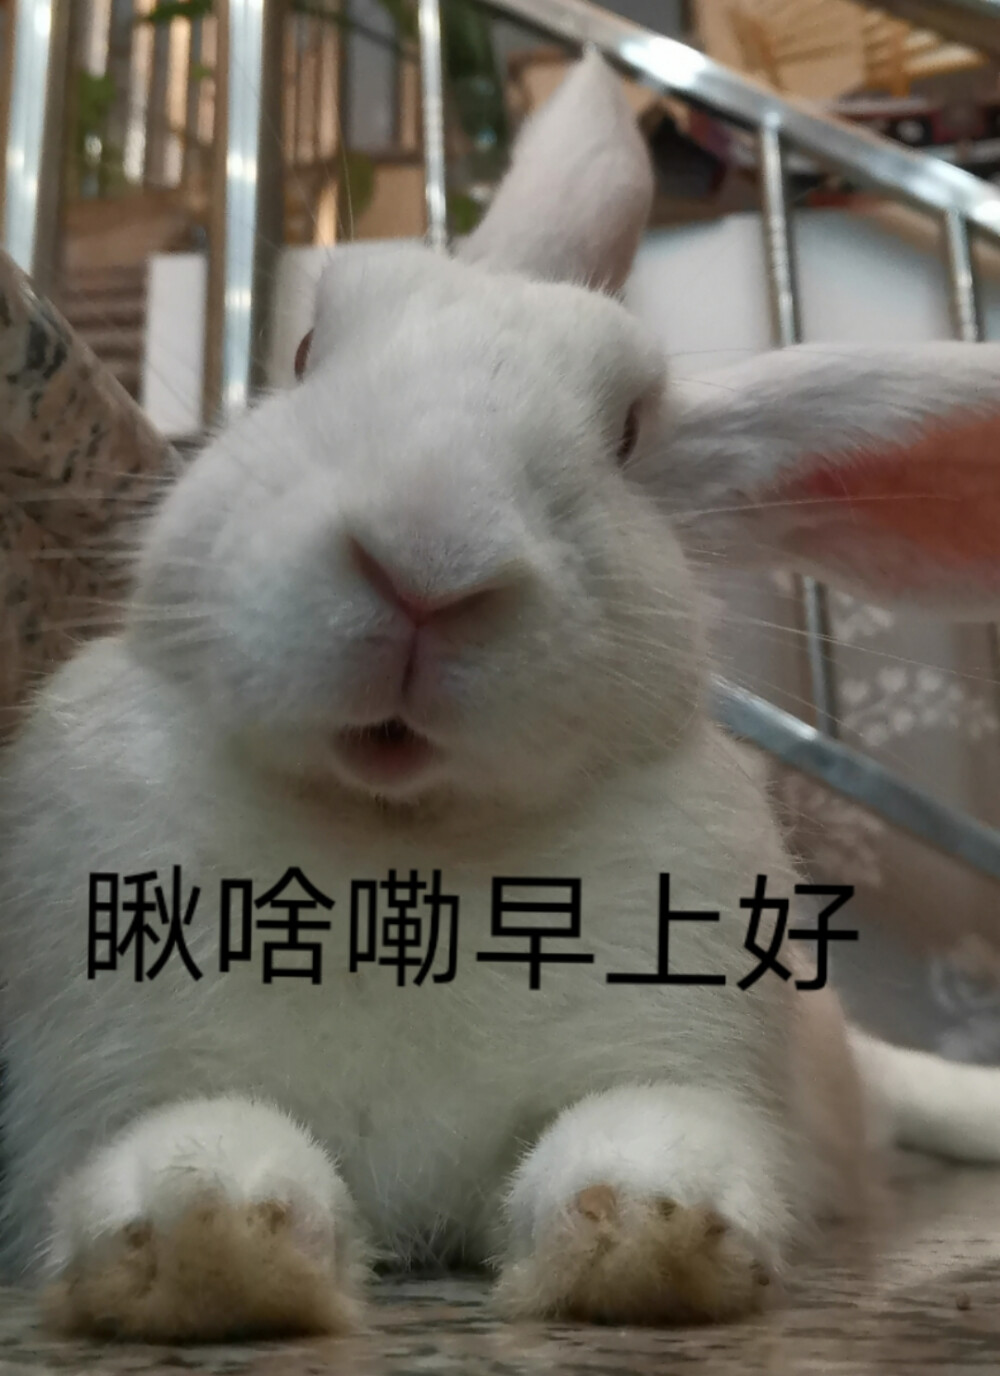 兔兔跟你们说早上好